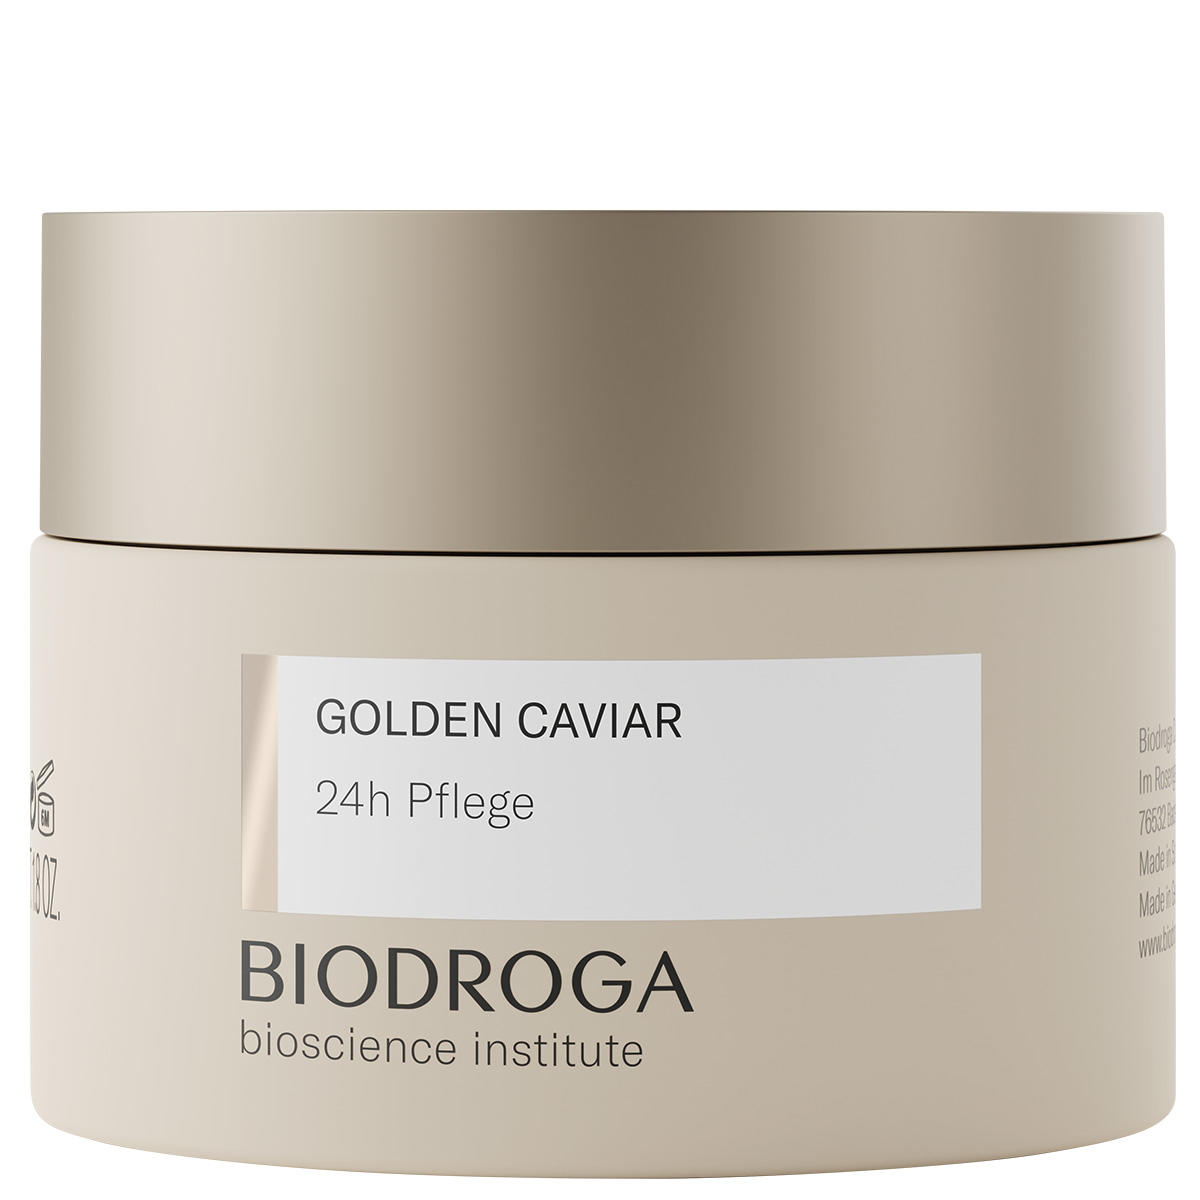 BIODROGA Bioscience Institute GOLDEN CAVIAR Assistenza 24 ore su 24 50 ml - 1